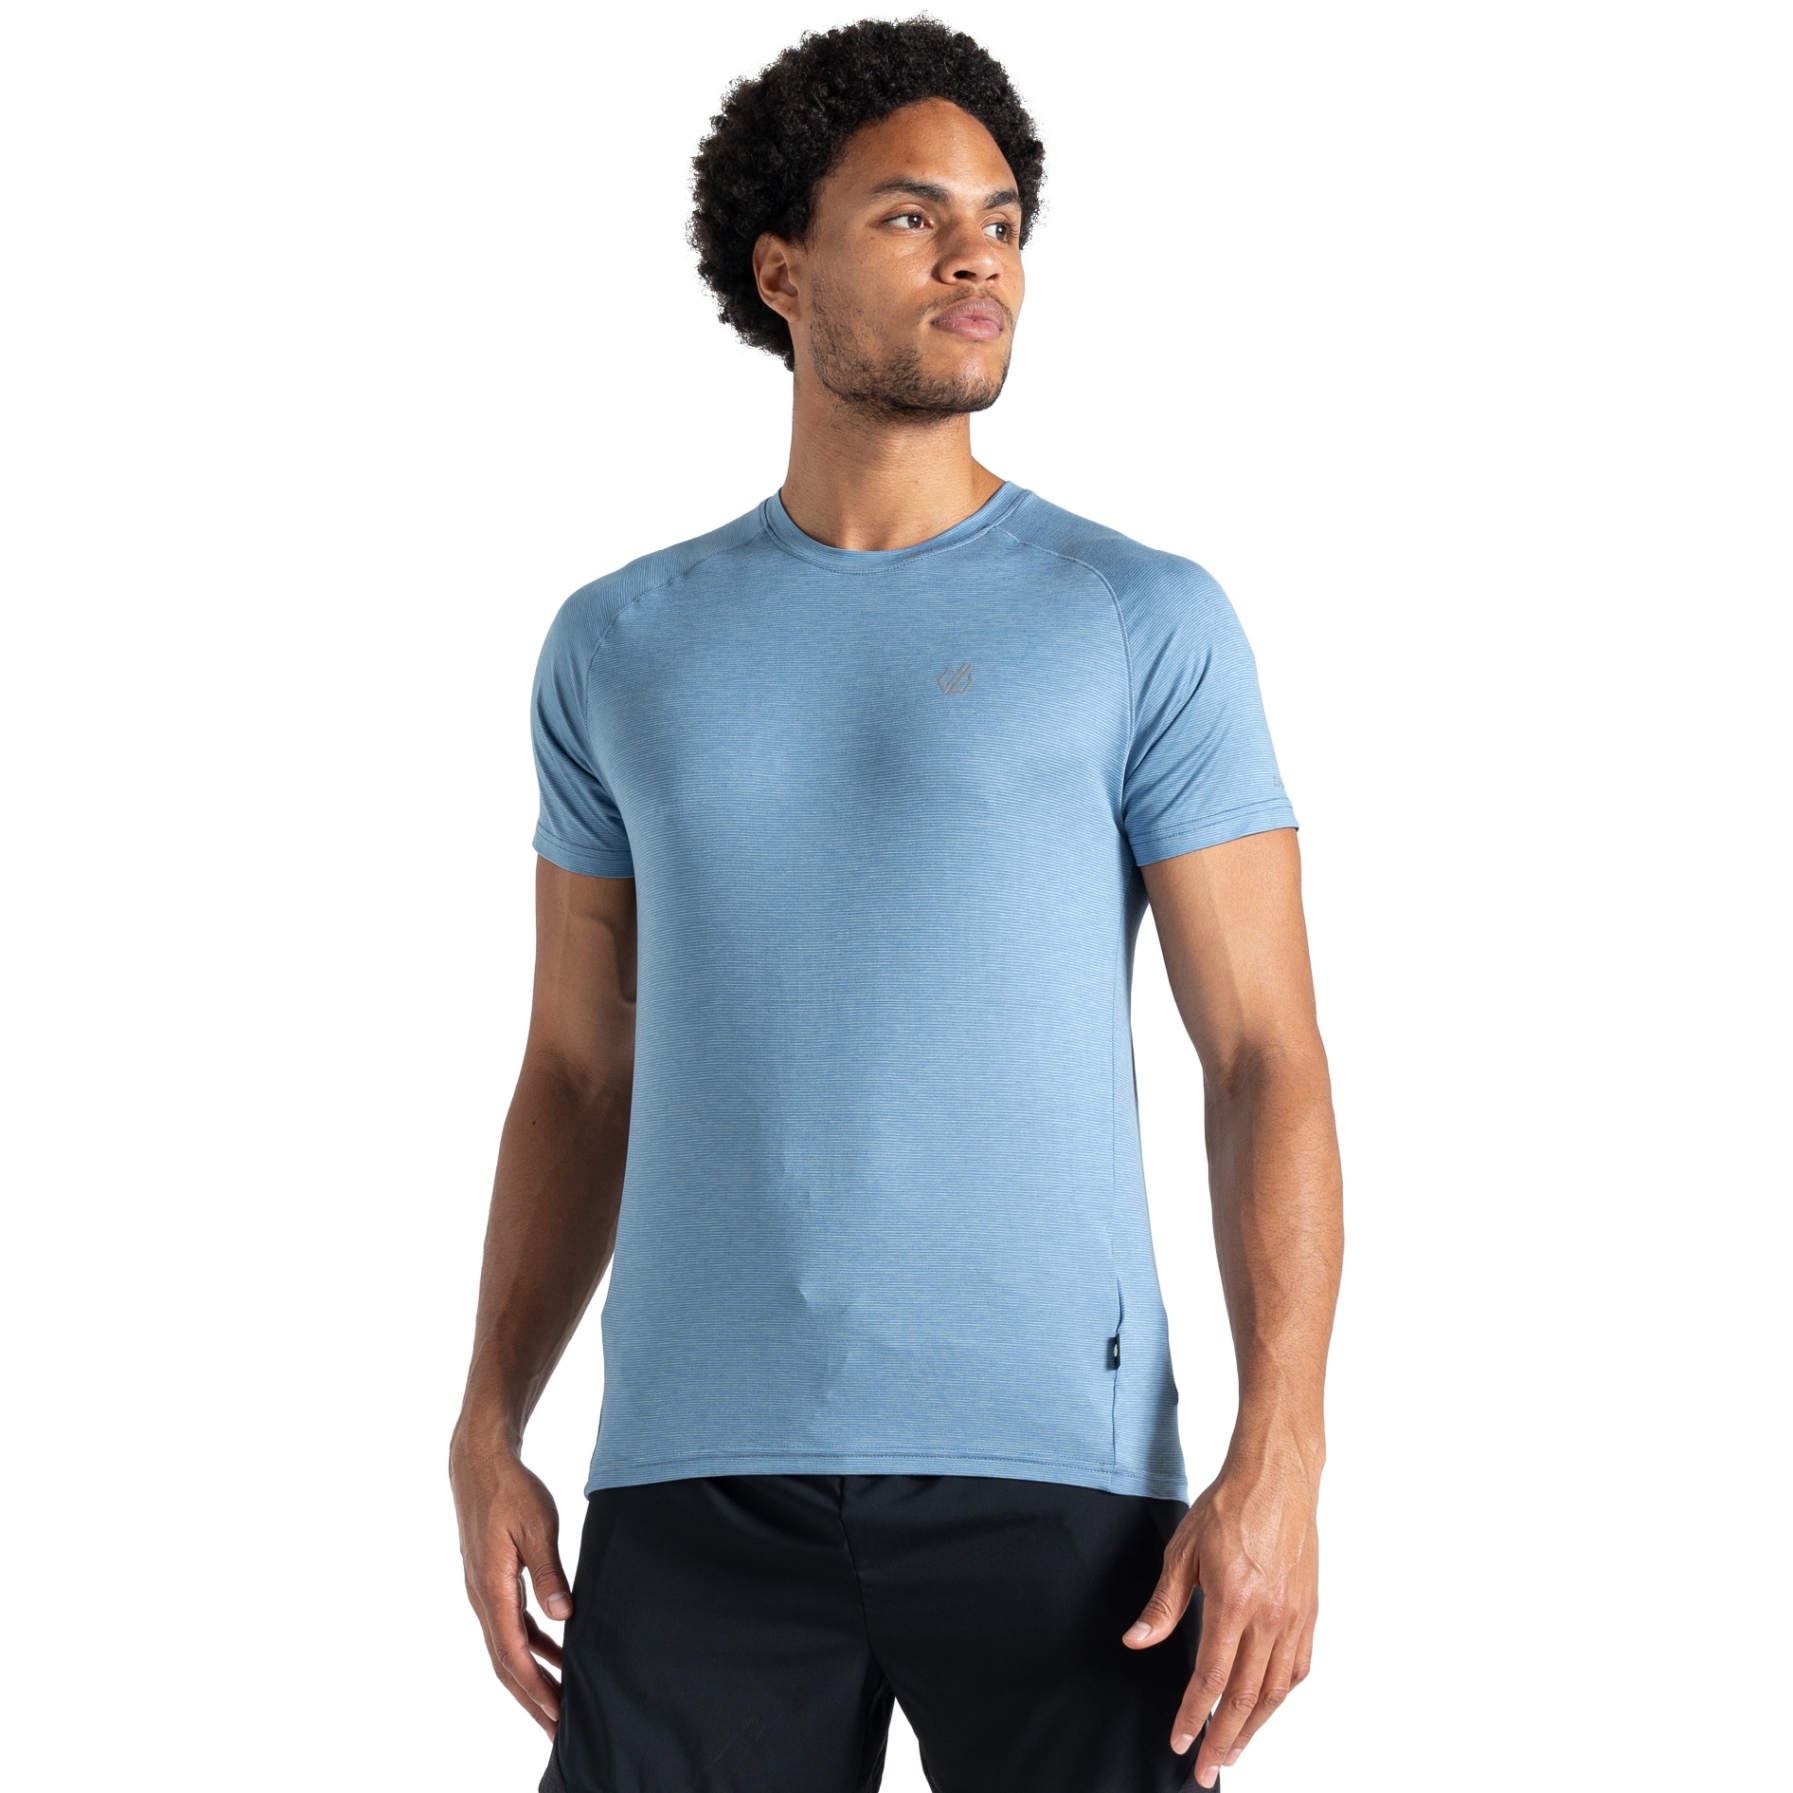 Produktbild von Dare 2b Persist T-Shirt Herren - Q3S Coronet Blue Marl